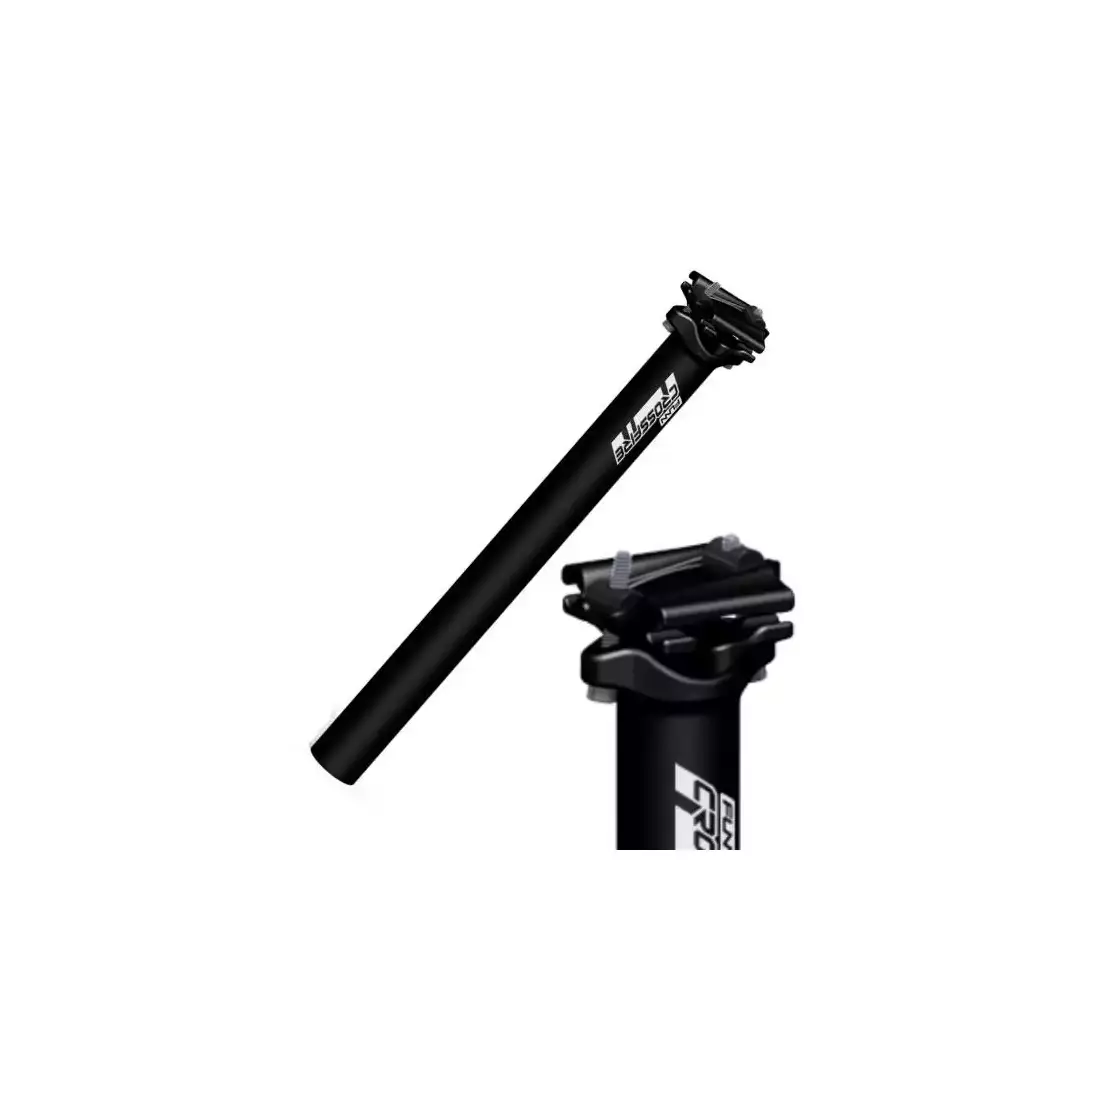 FUNN CROSSFIRE kerékpár üléstartó 31,6 mm, fekete